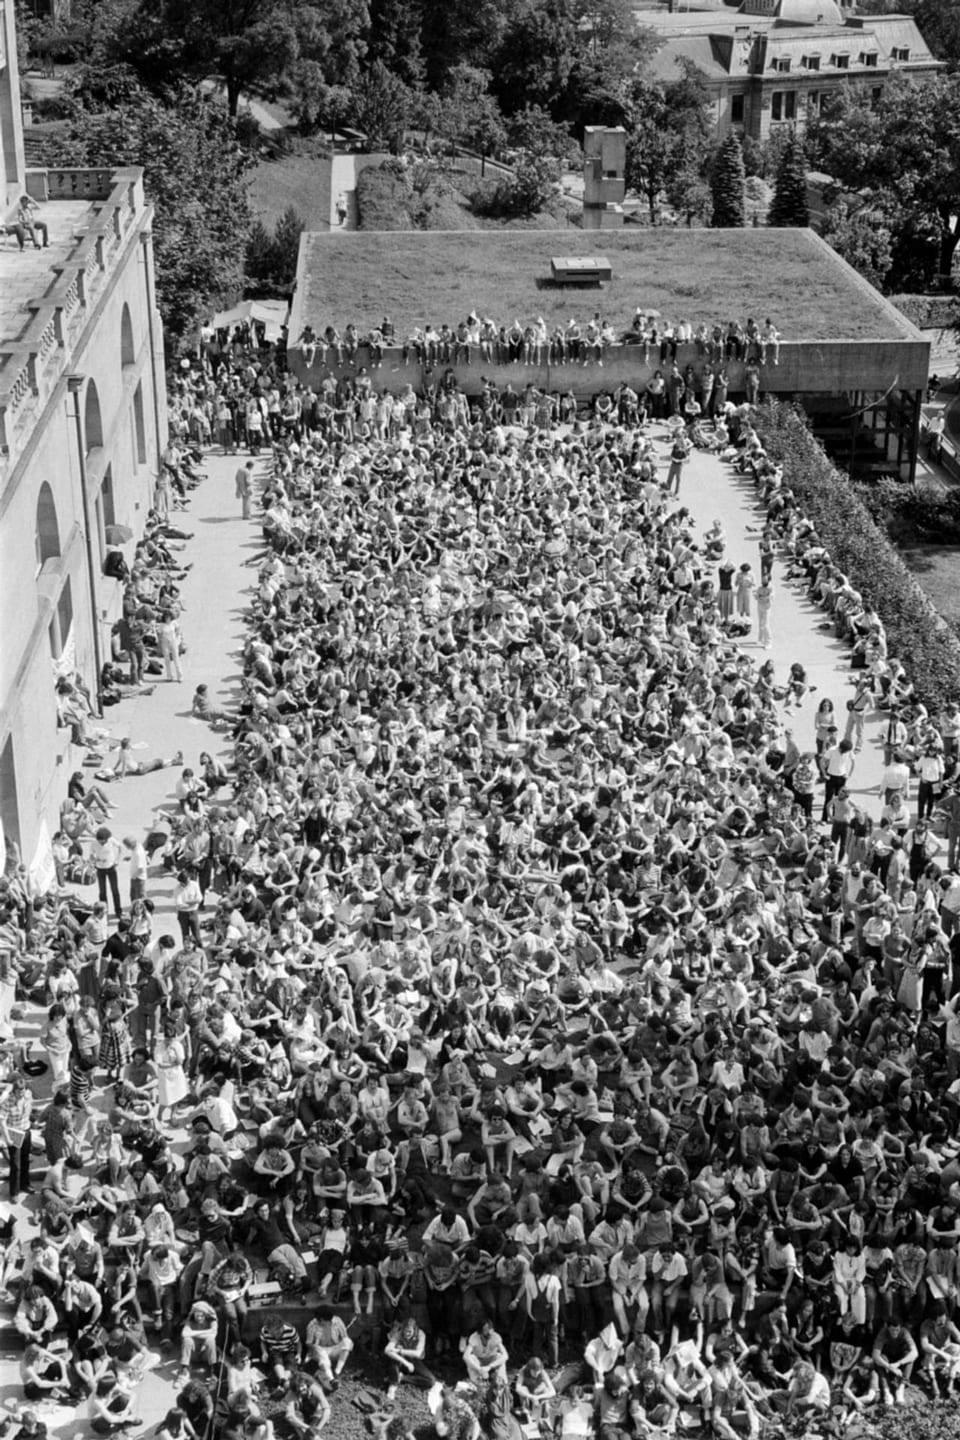 Luftaufnahme einer grossen Menschenmenge bei einer Versammlung im Freien.